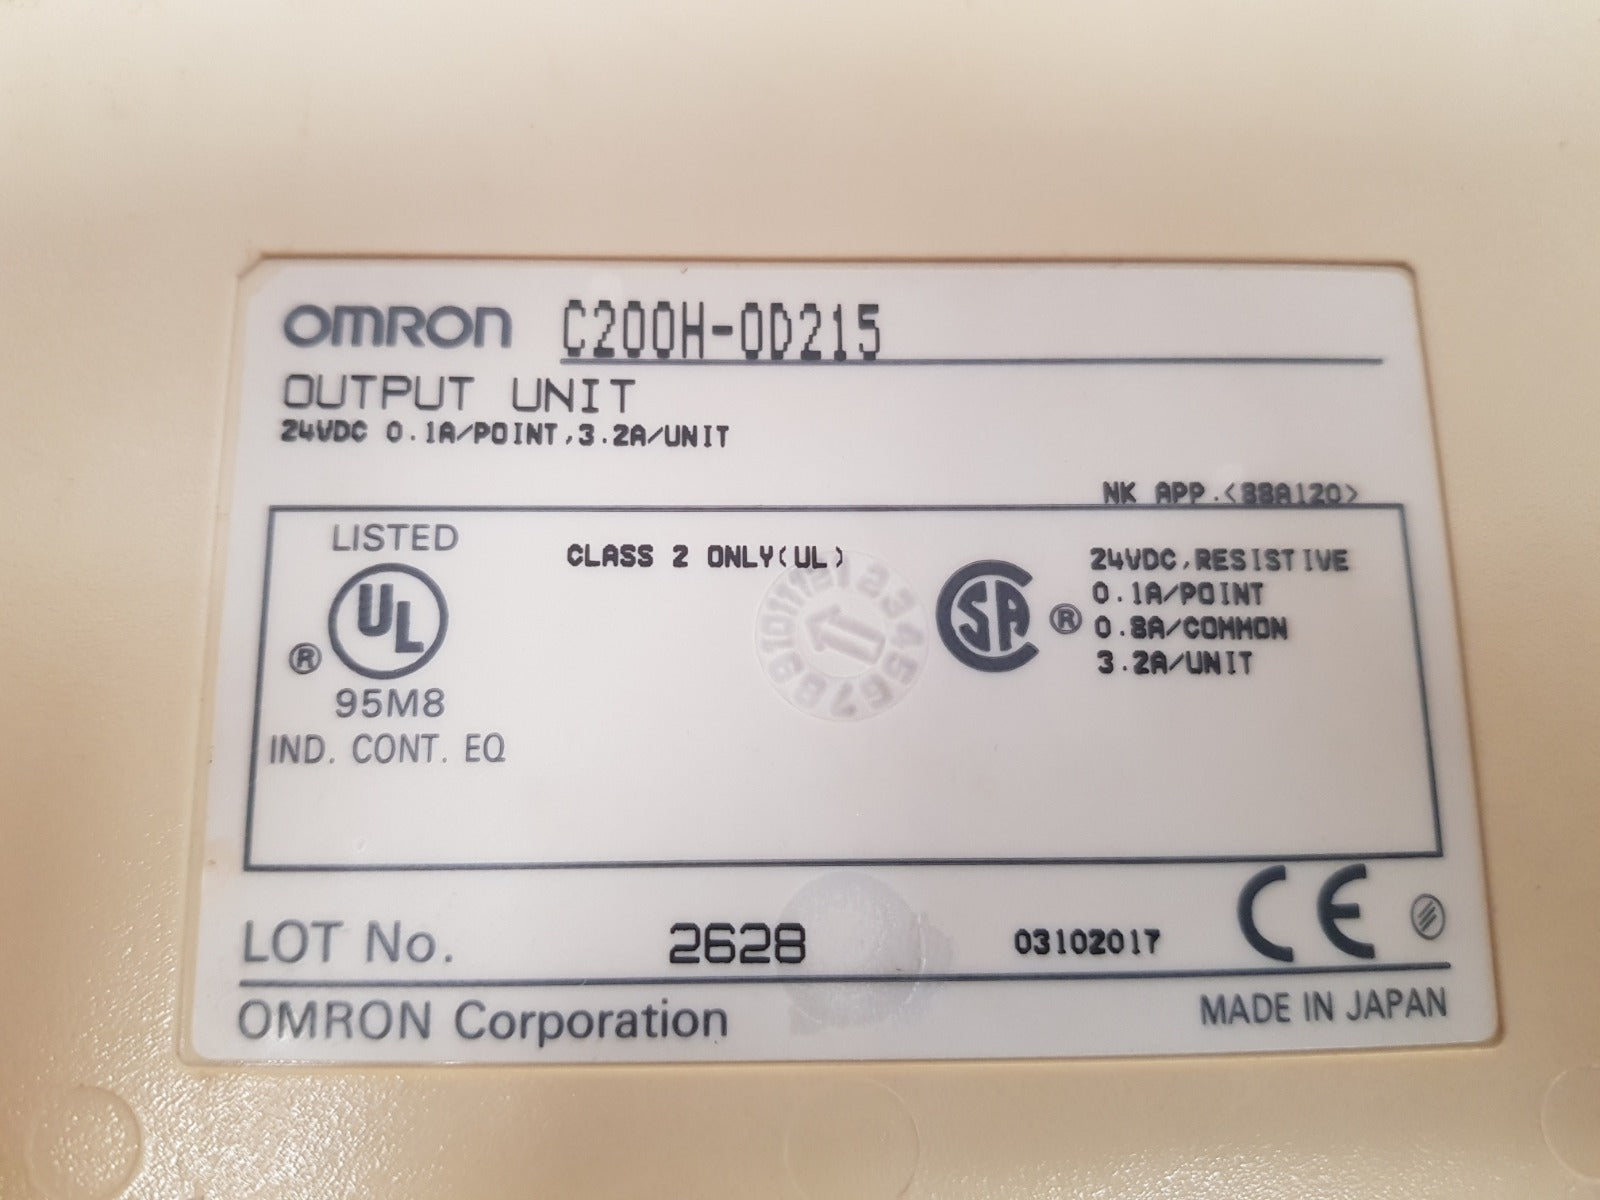 Omron c200h-od215 output unit 24vdc 0.1a/point 3.2a/unit